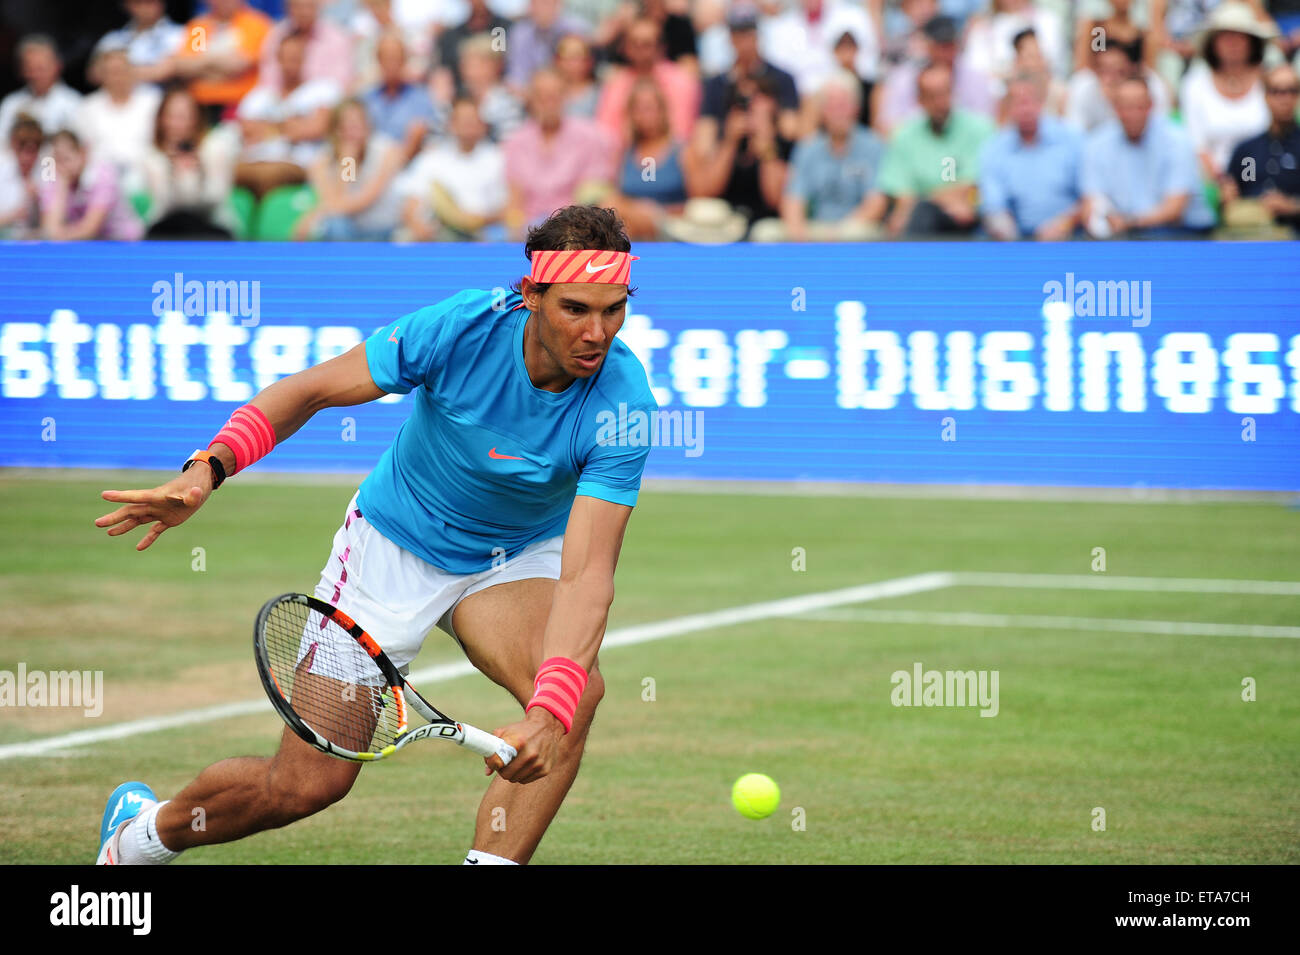 Stuttgart, Germania. 12 Giugno, 2015. Rafael Nadal durante il trimestre finale della Mercedes Cup di Stoccarda. Foto: Miroslav Dakov/ Alamy Live News Foto Stock